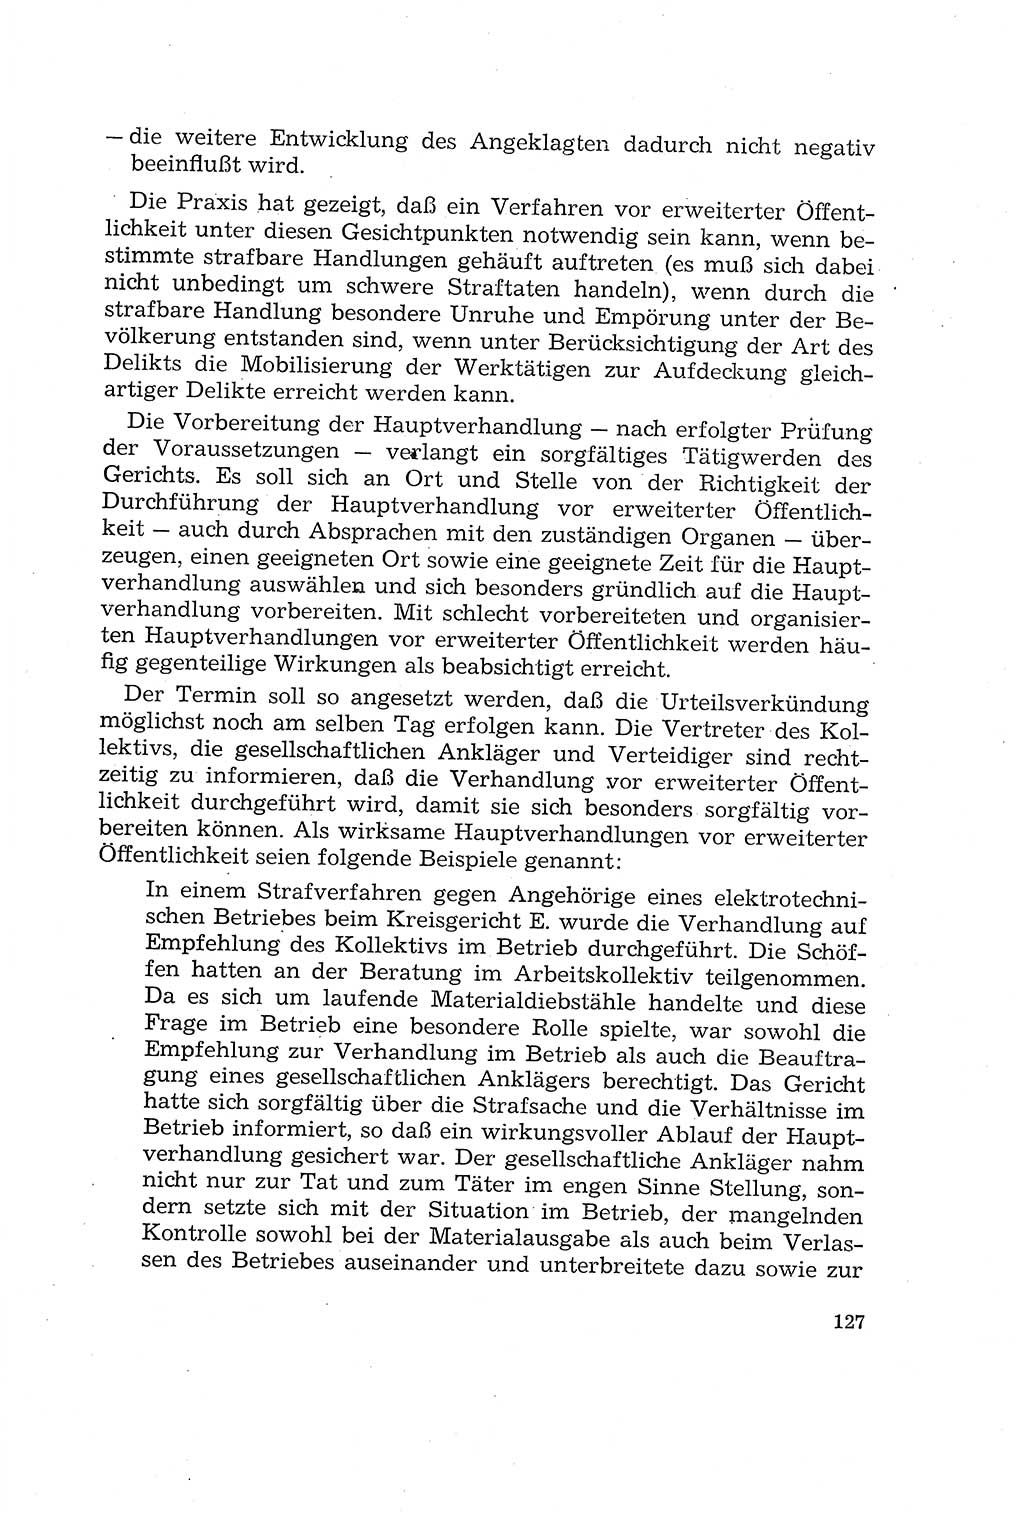 Die Mitwirkung der Werktätigen am Strafverfahren [Deutsche Demokratische Republik (DDR)] 1966, Seite 127 (Mitw. Str.-Verf. DDR 1966, S. 127)